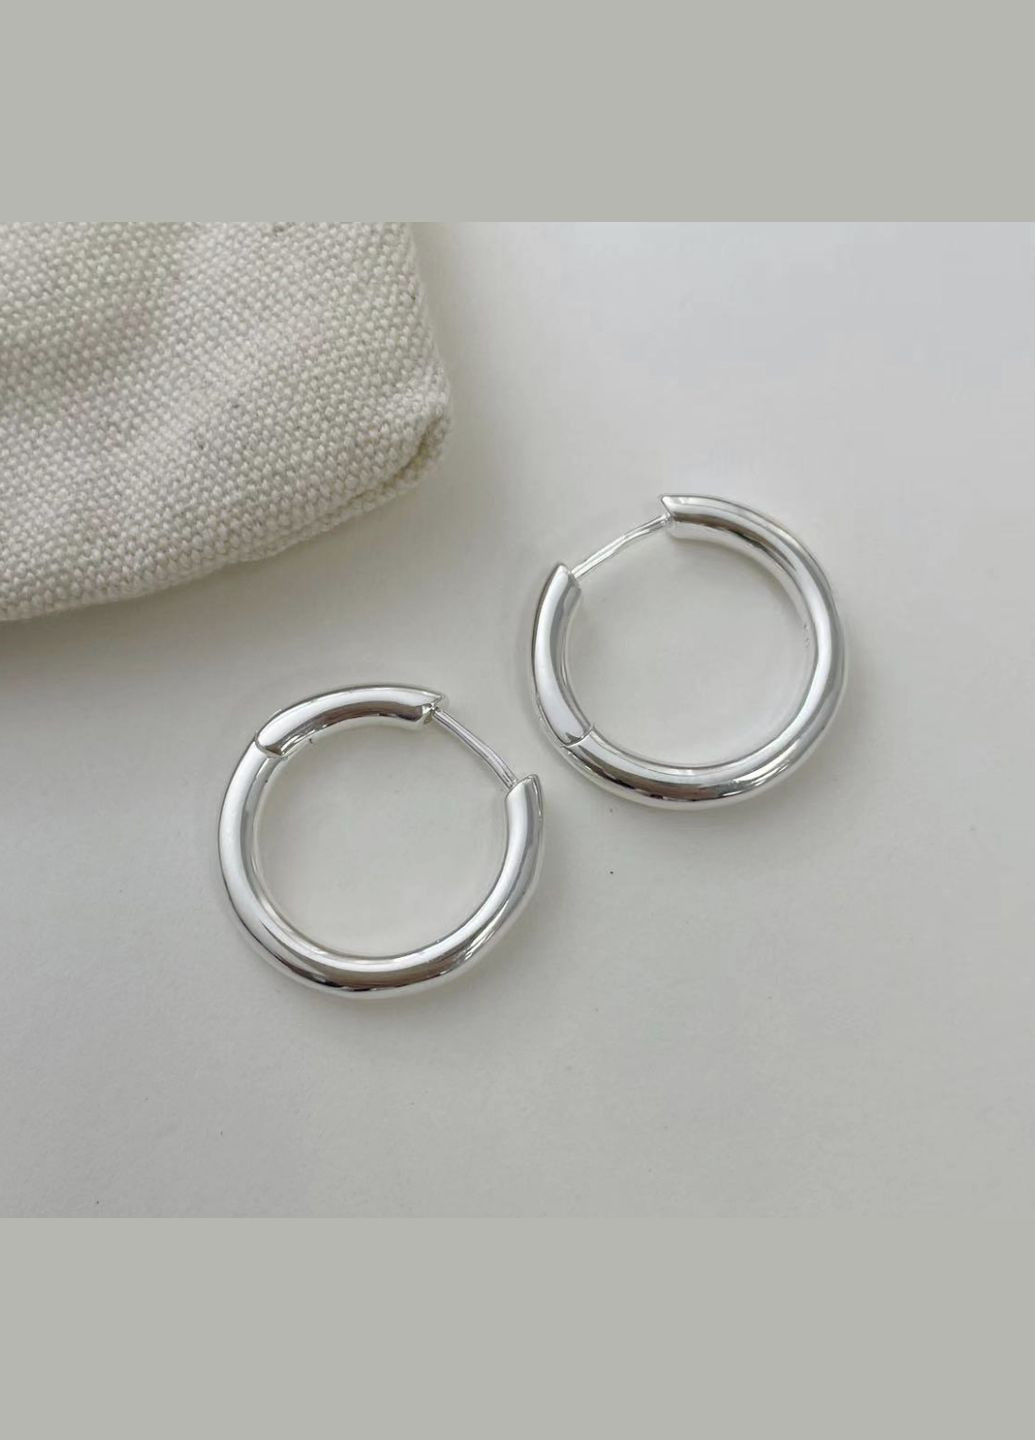 Серебряные S925 серьги круглые без камней, серьги 2 см серебряные большие, серьги серьги минималистичные, подарок девушке СС11 Etre (292401671)